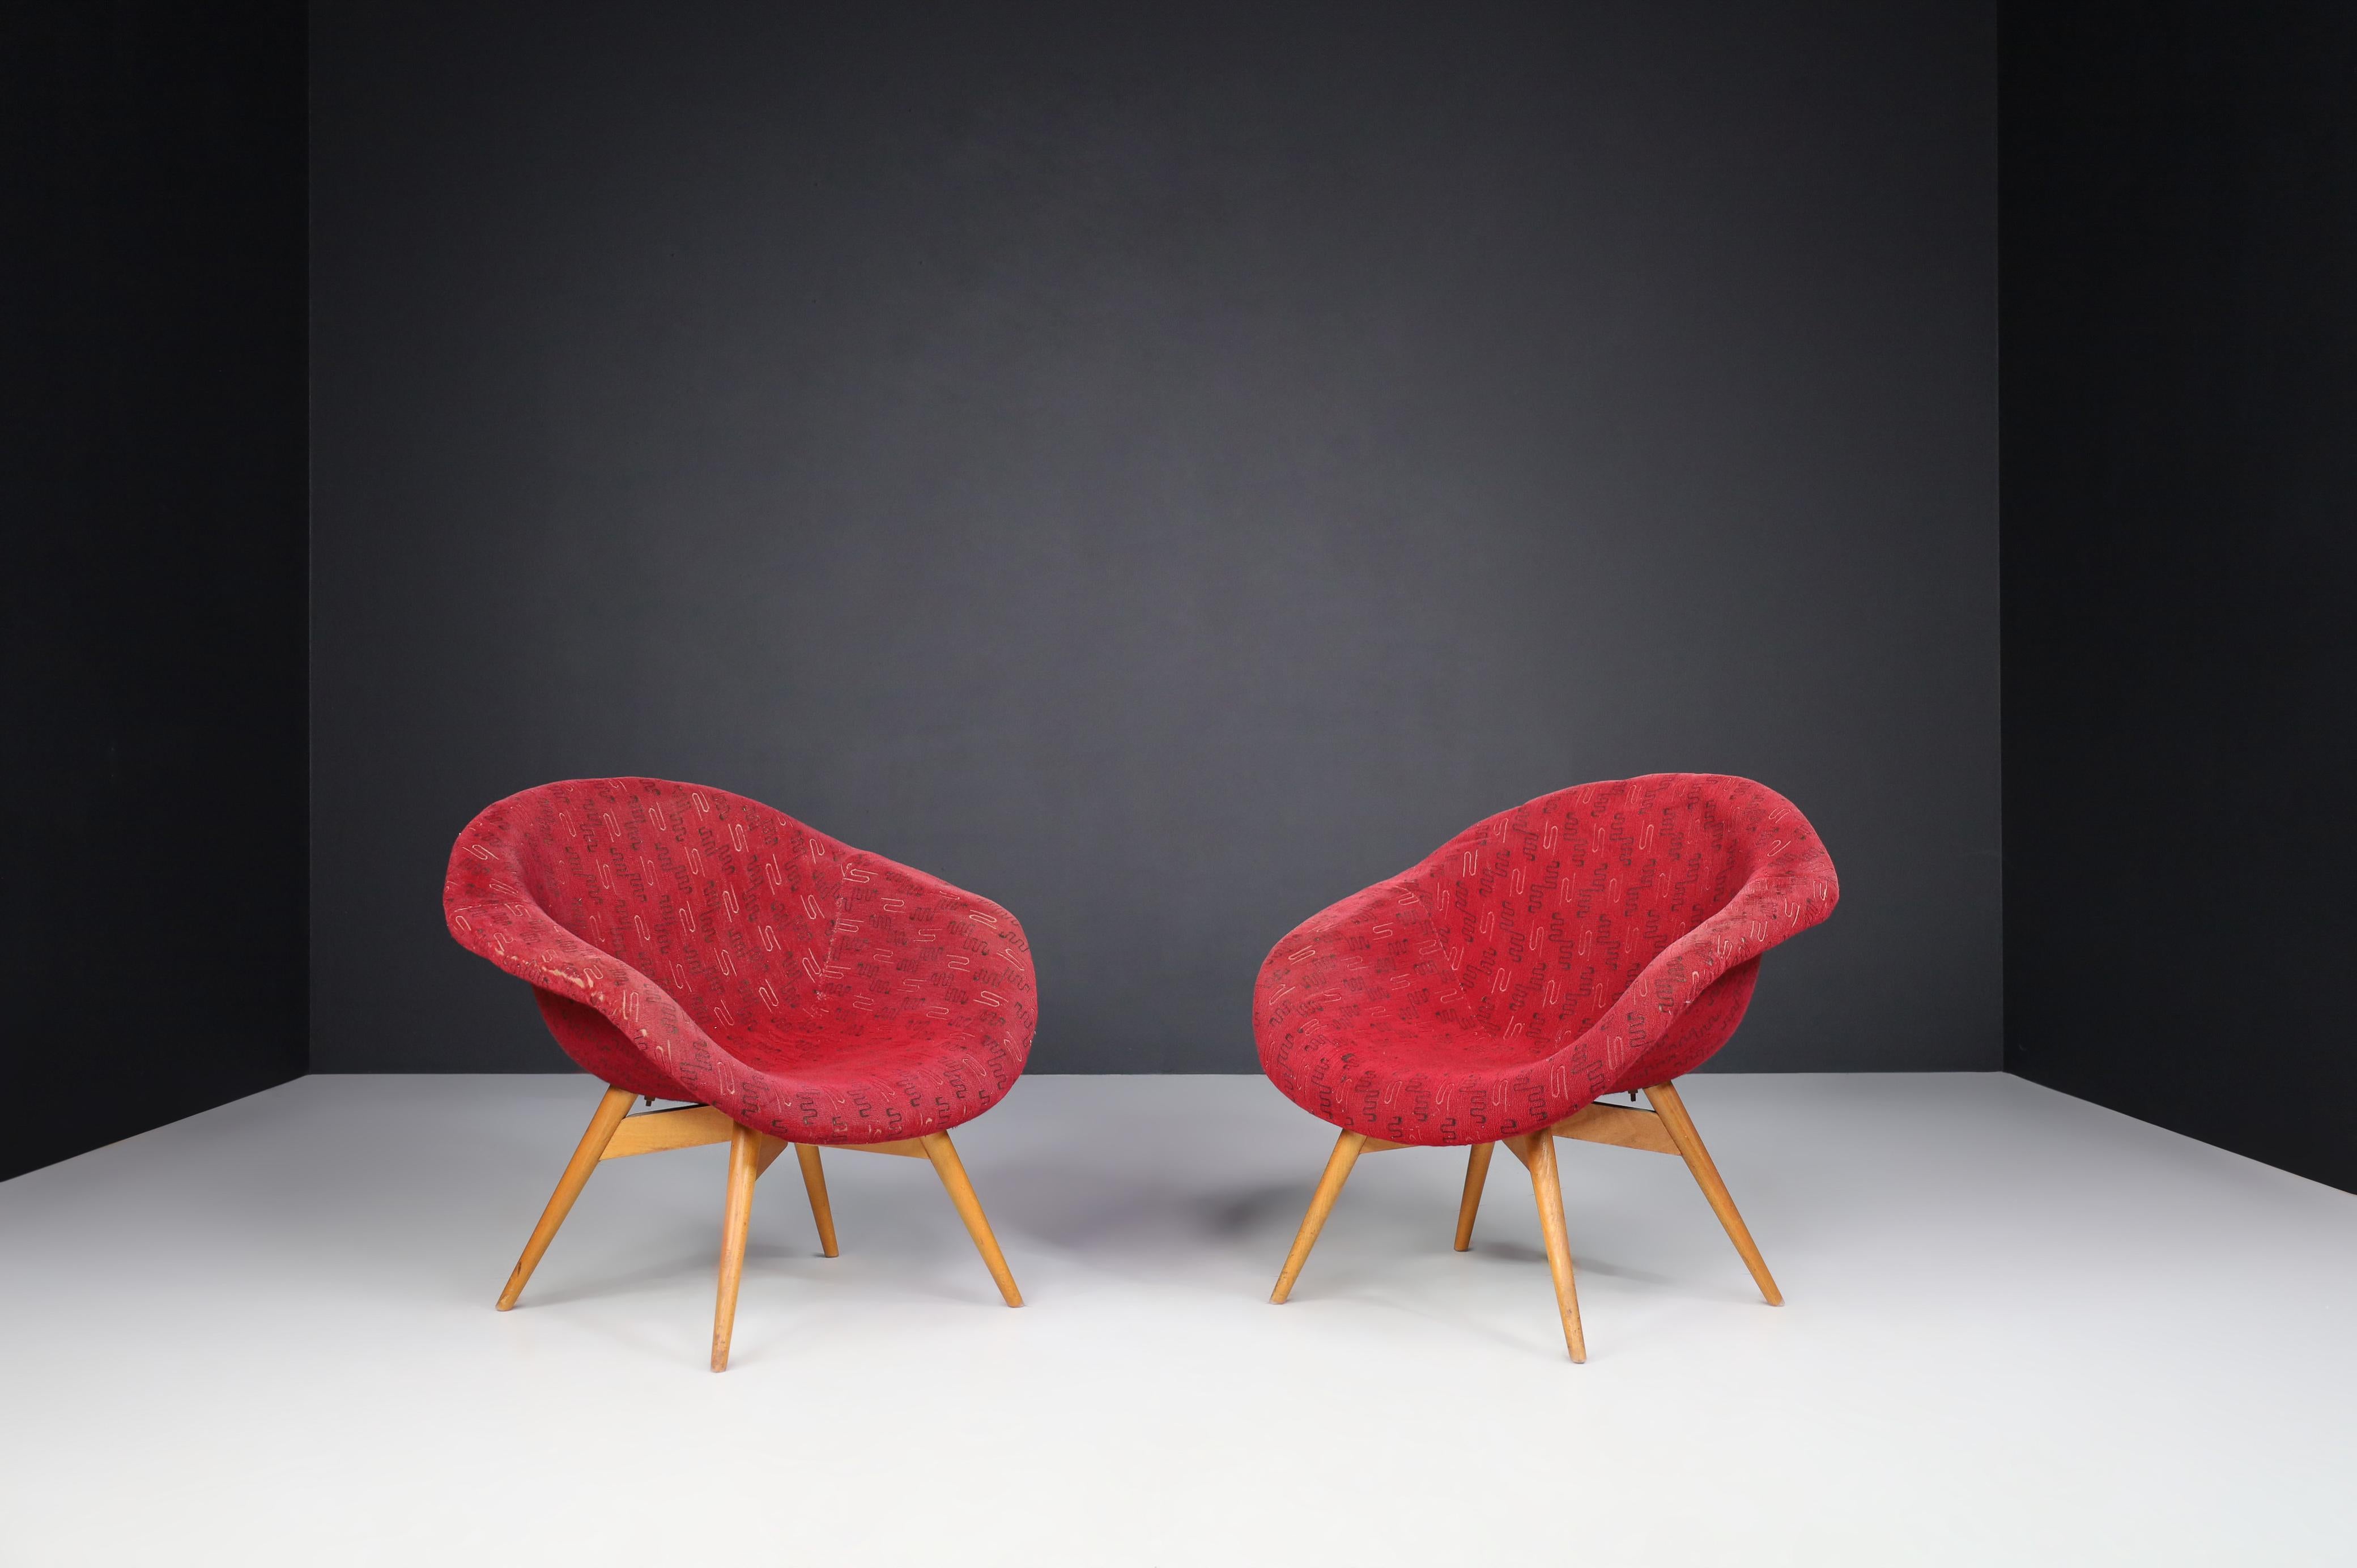 Fauteuils Miroslav Navratil en tissu original 1960.

Joli ensemble de deux fauteuils de Miroslav Navratil, fabriqués en République tchèque par Cesky Nabytek vers 1960. Ces chaises ont une base en contreplaqué de hêtre et une coque en fibre de verre